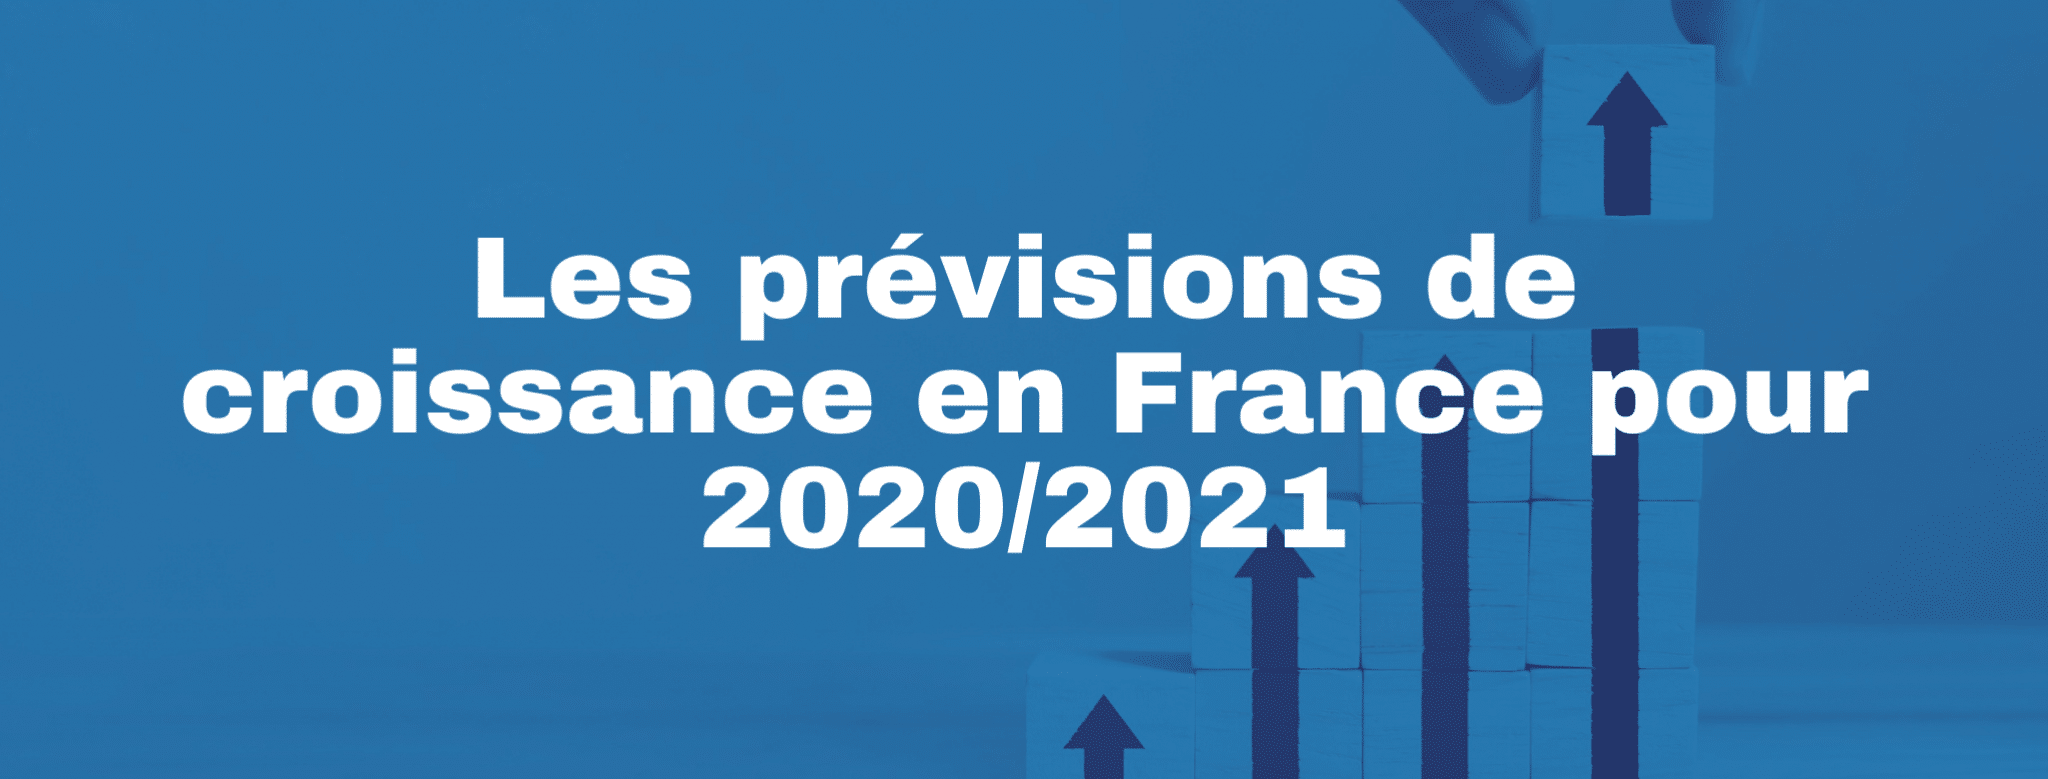 Lire la suite à propos de l’article Les prévisions de croissance en France pour 2020/2021